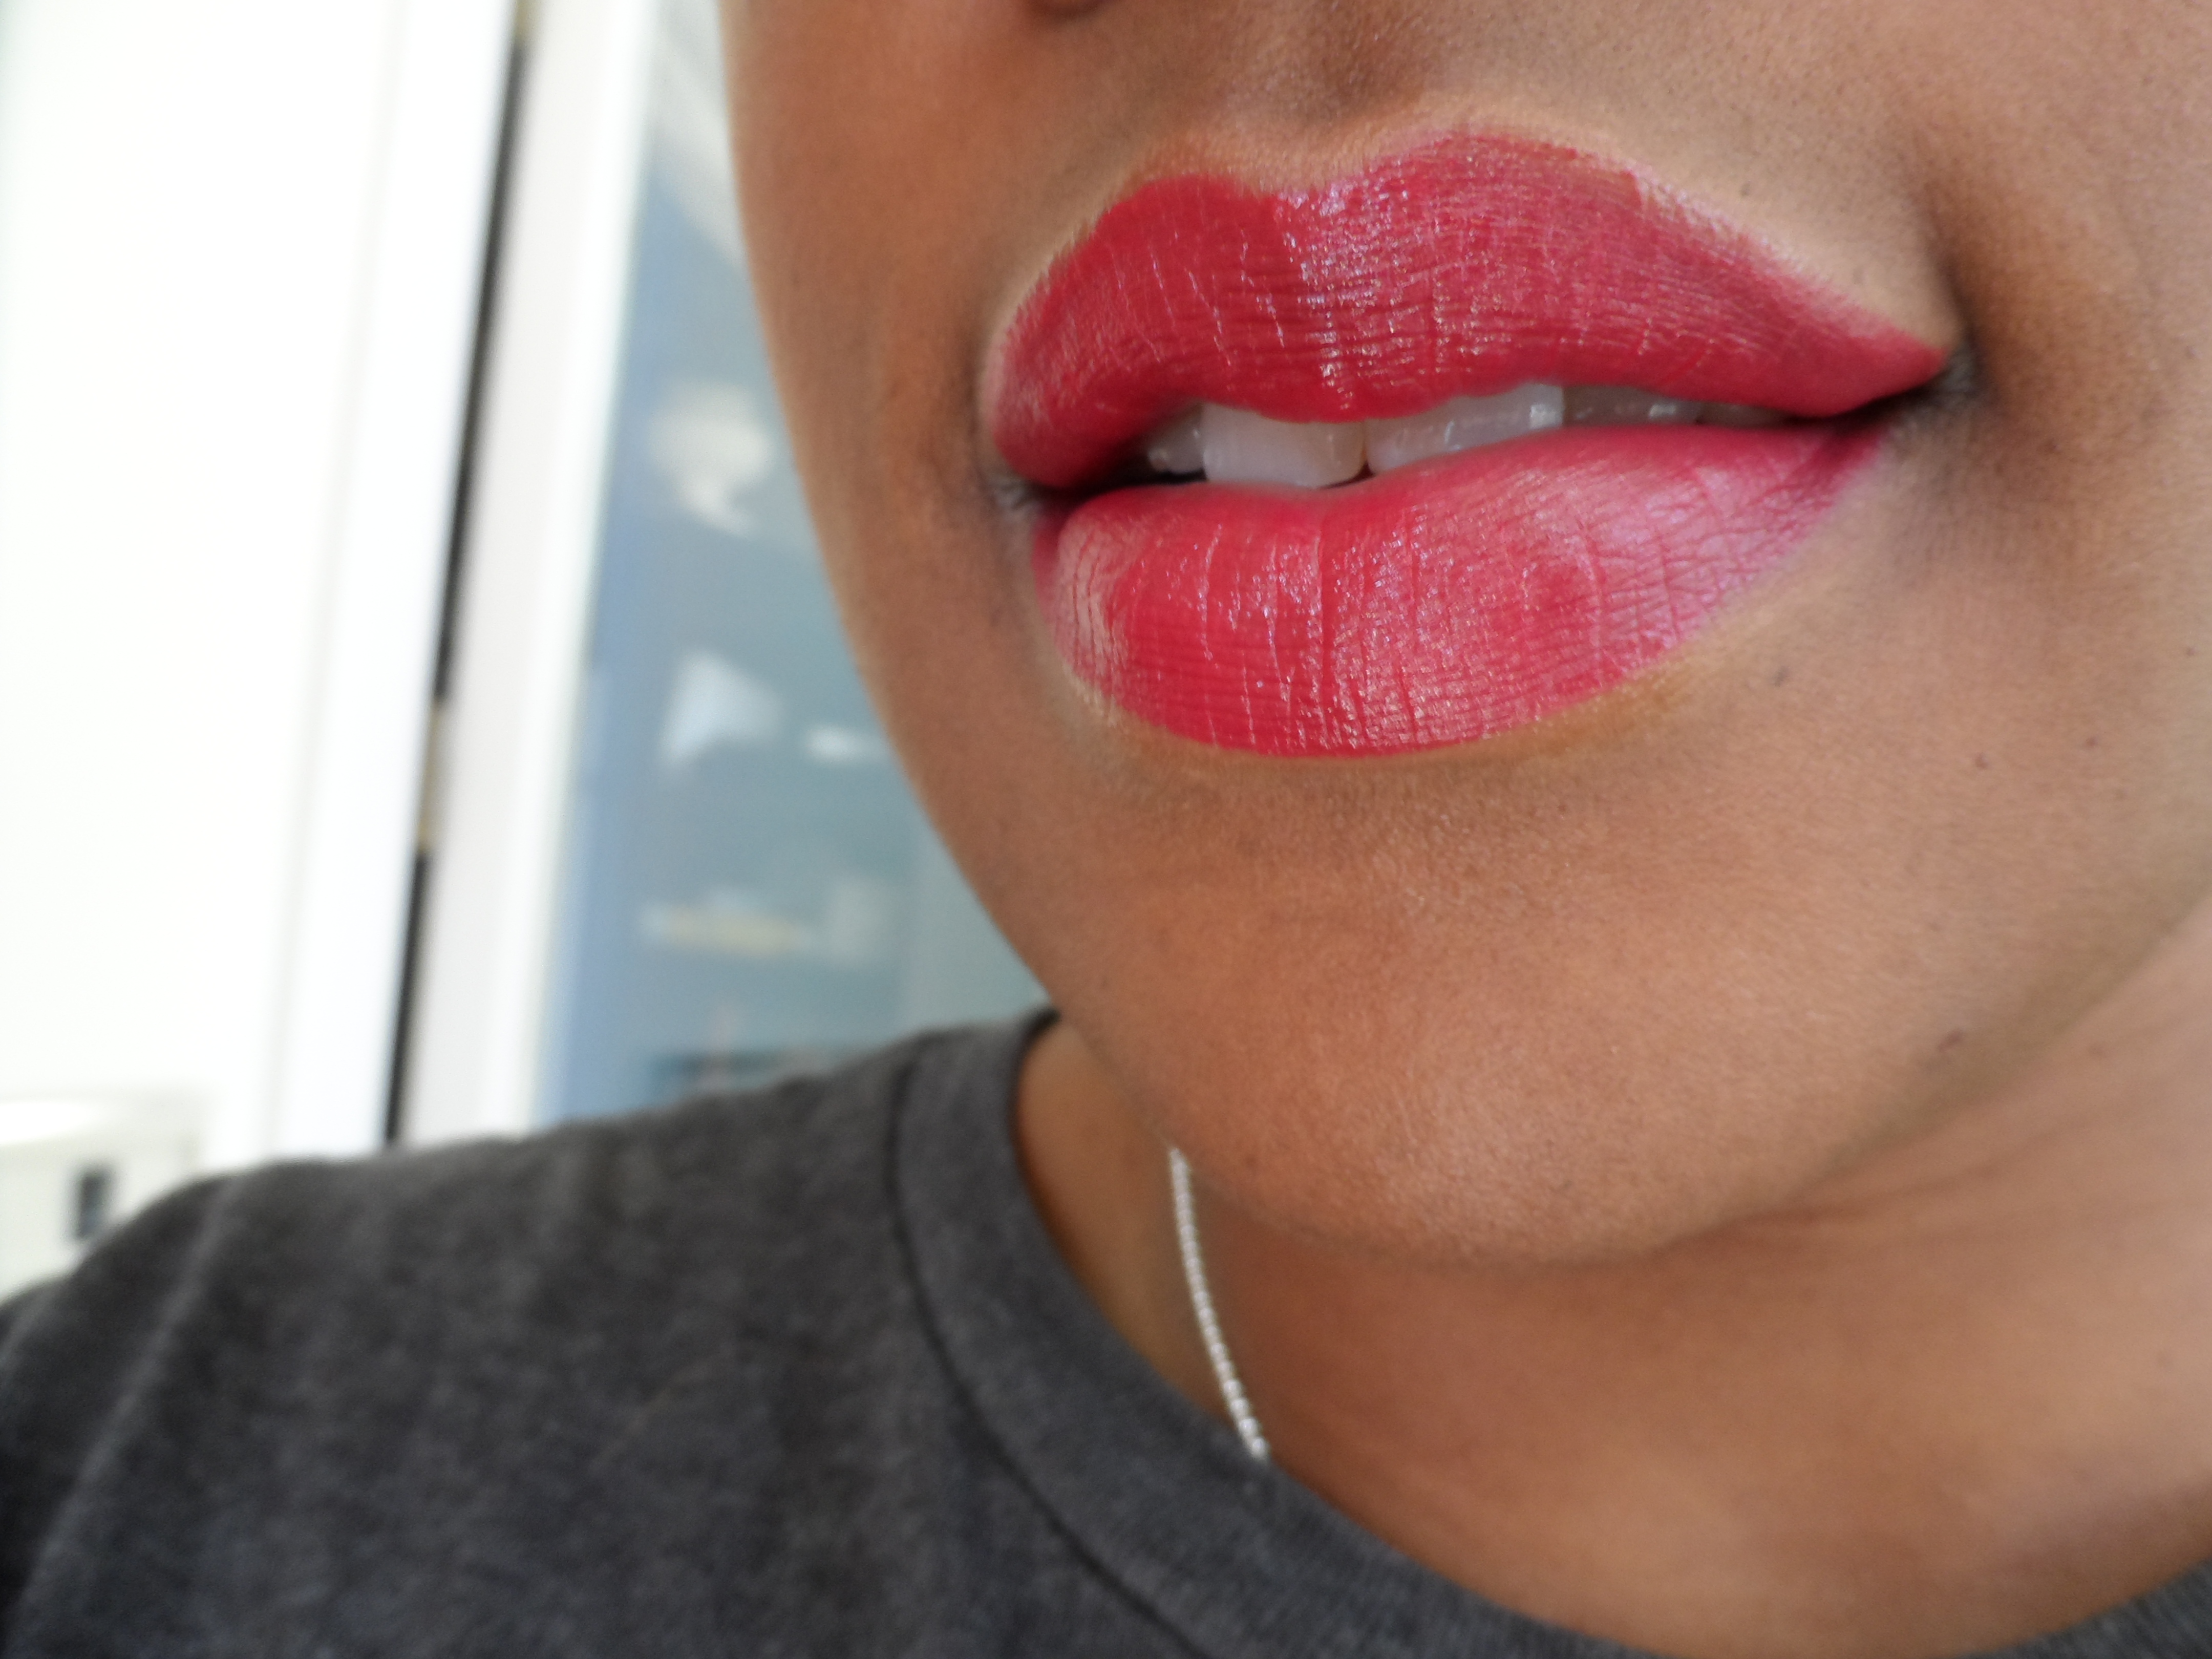 diorific marilyn lipstick